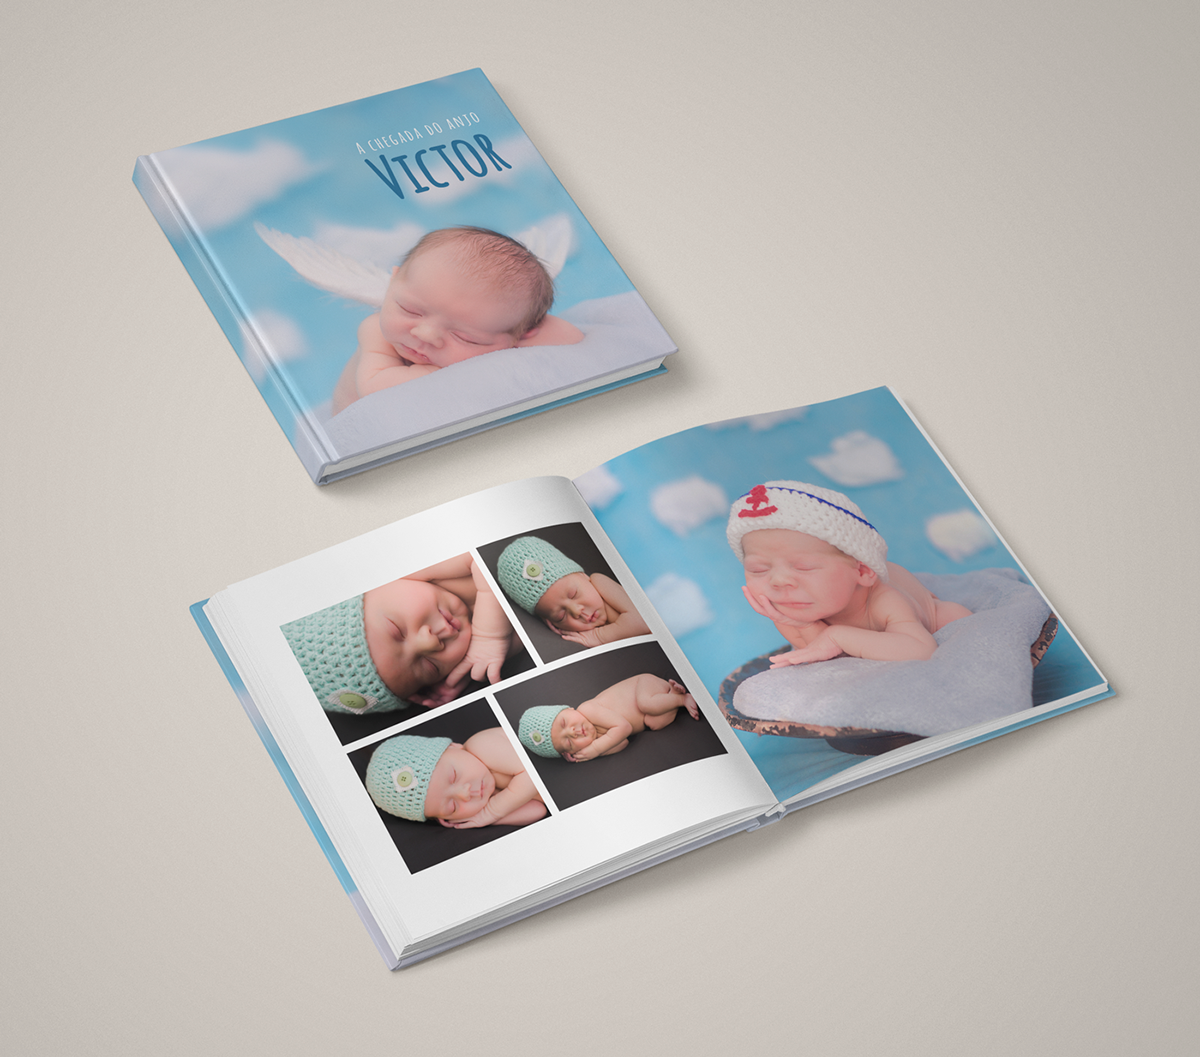 Fotolivros albuns diagramação design photoshop fotografos book design Album design